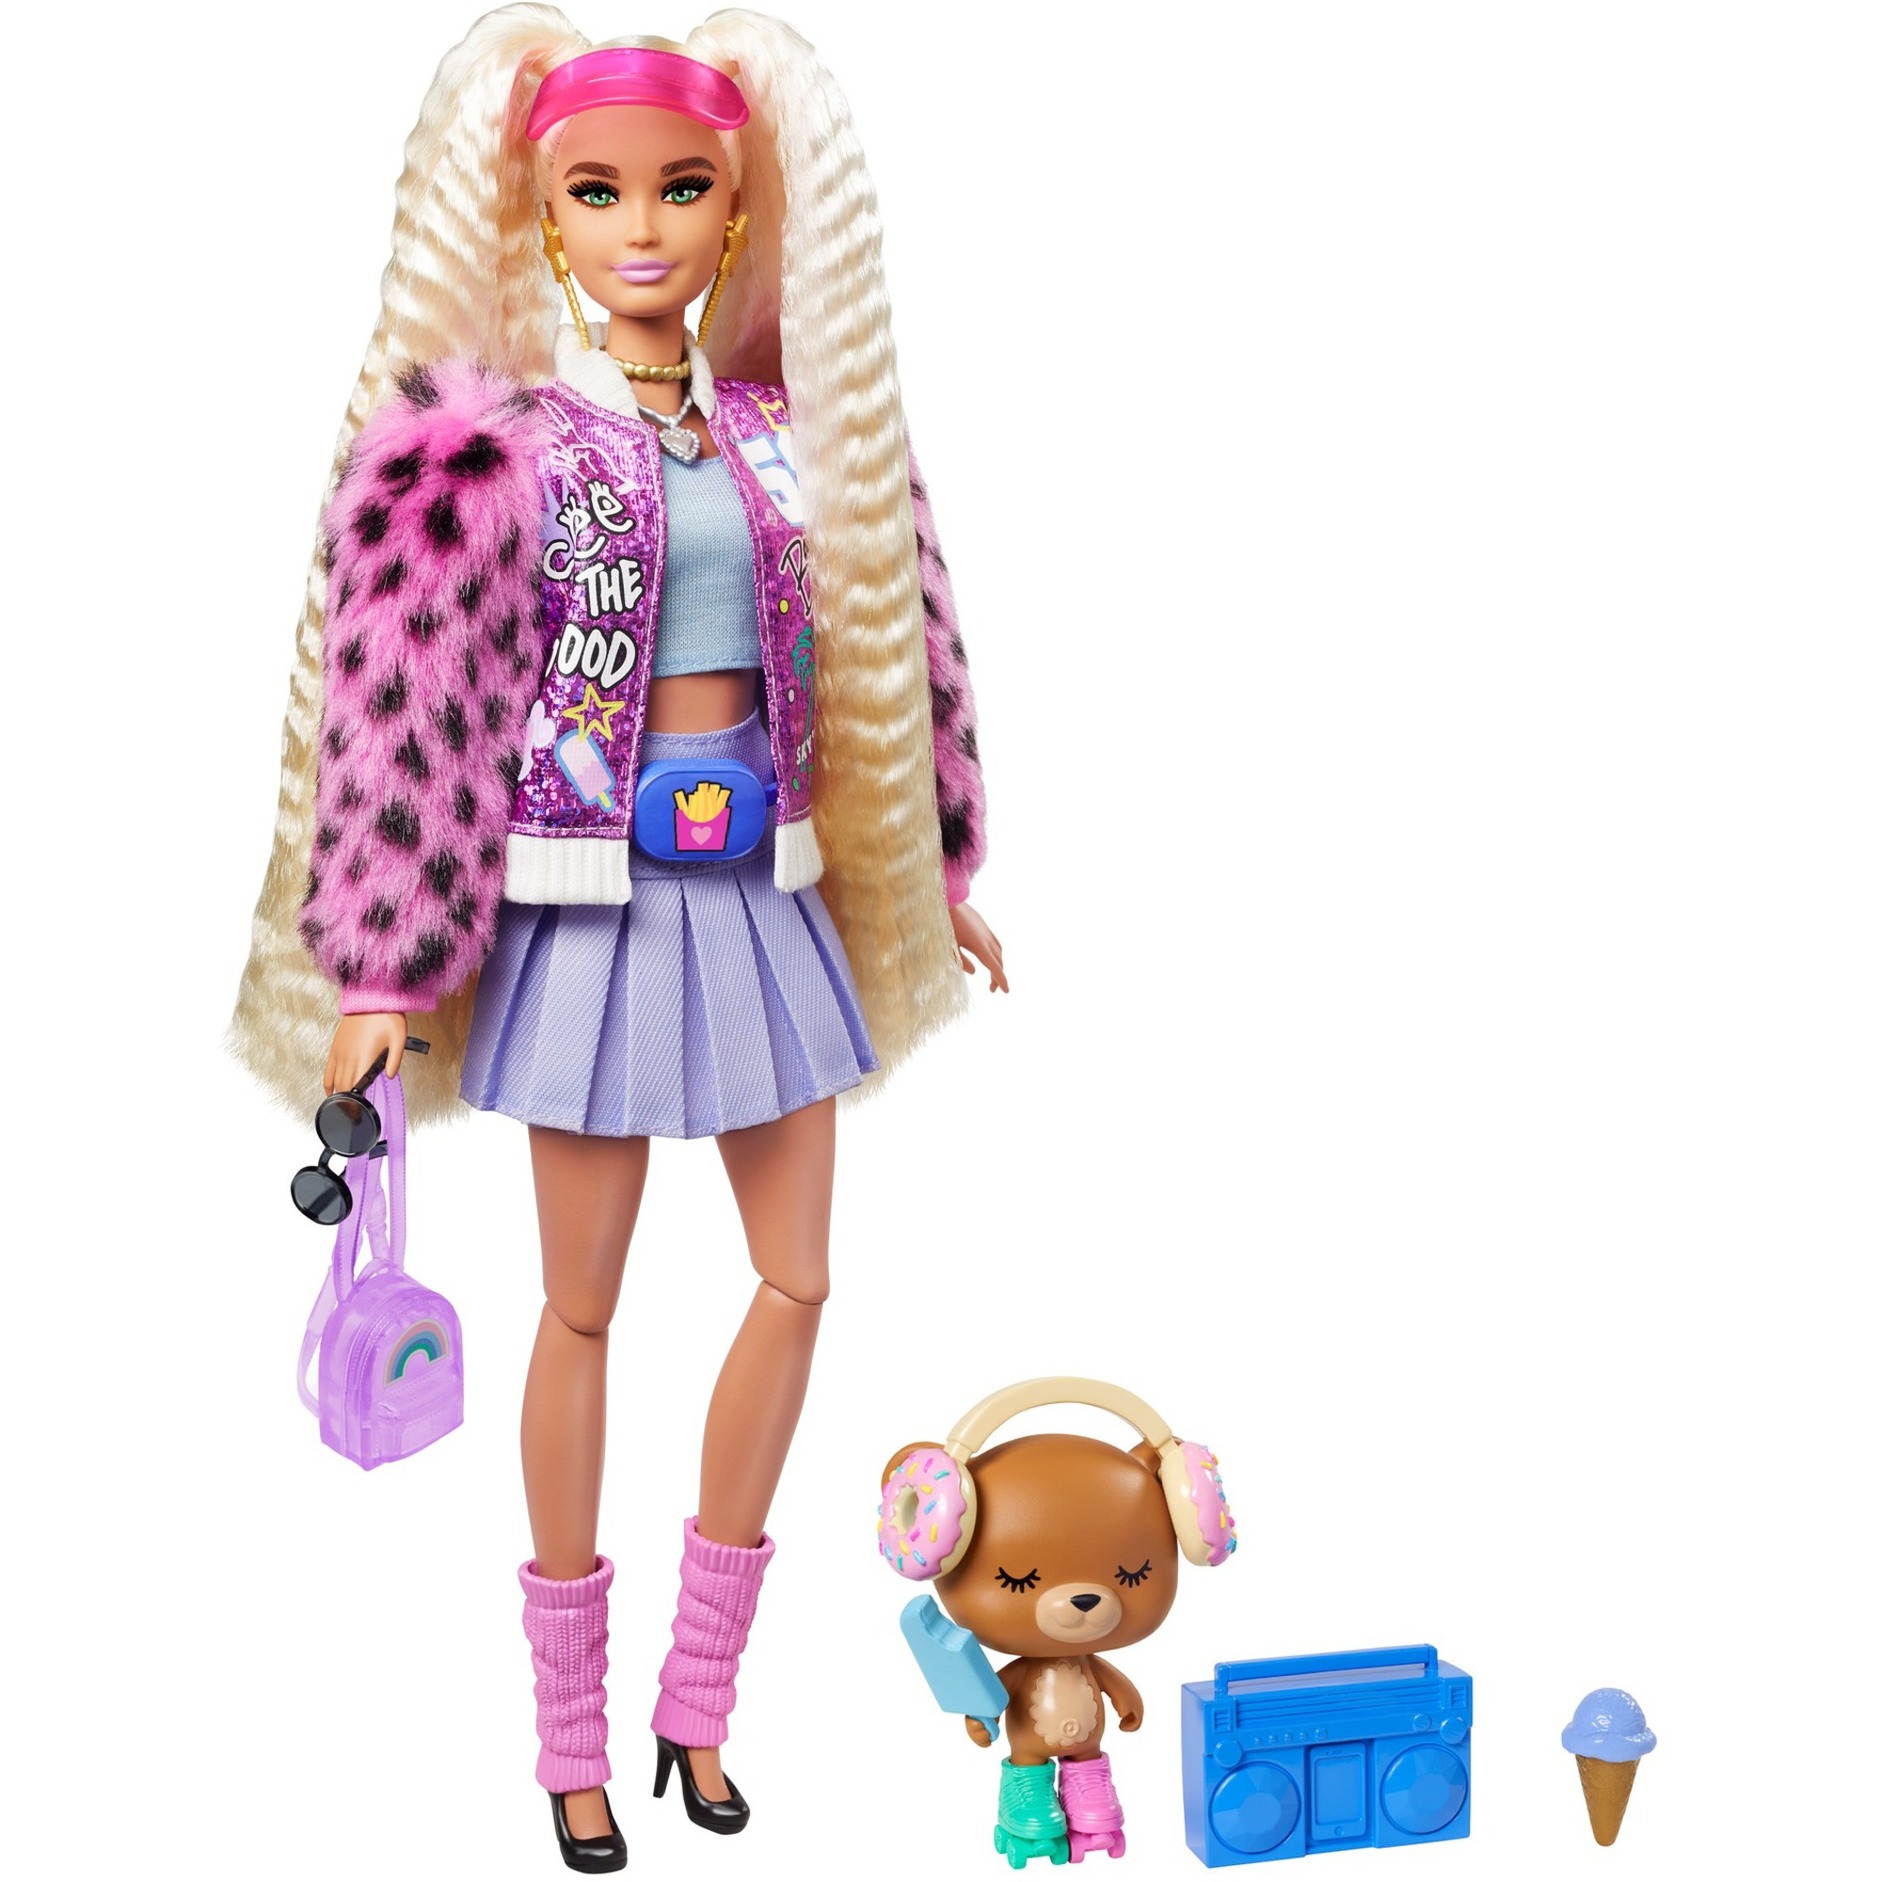 Image of Alternate - Barbie Extra Puppe mit blonden Zöpfen online einkaufen bei Alternate